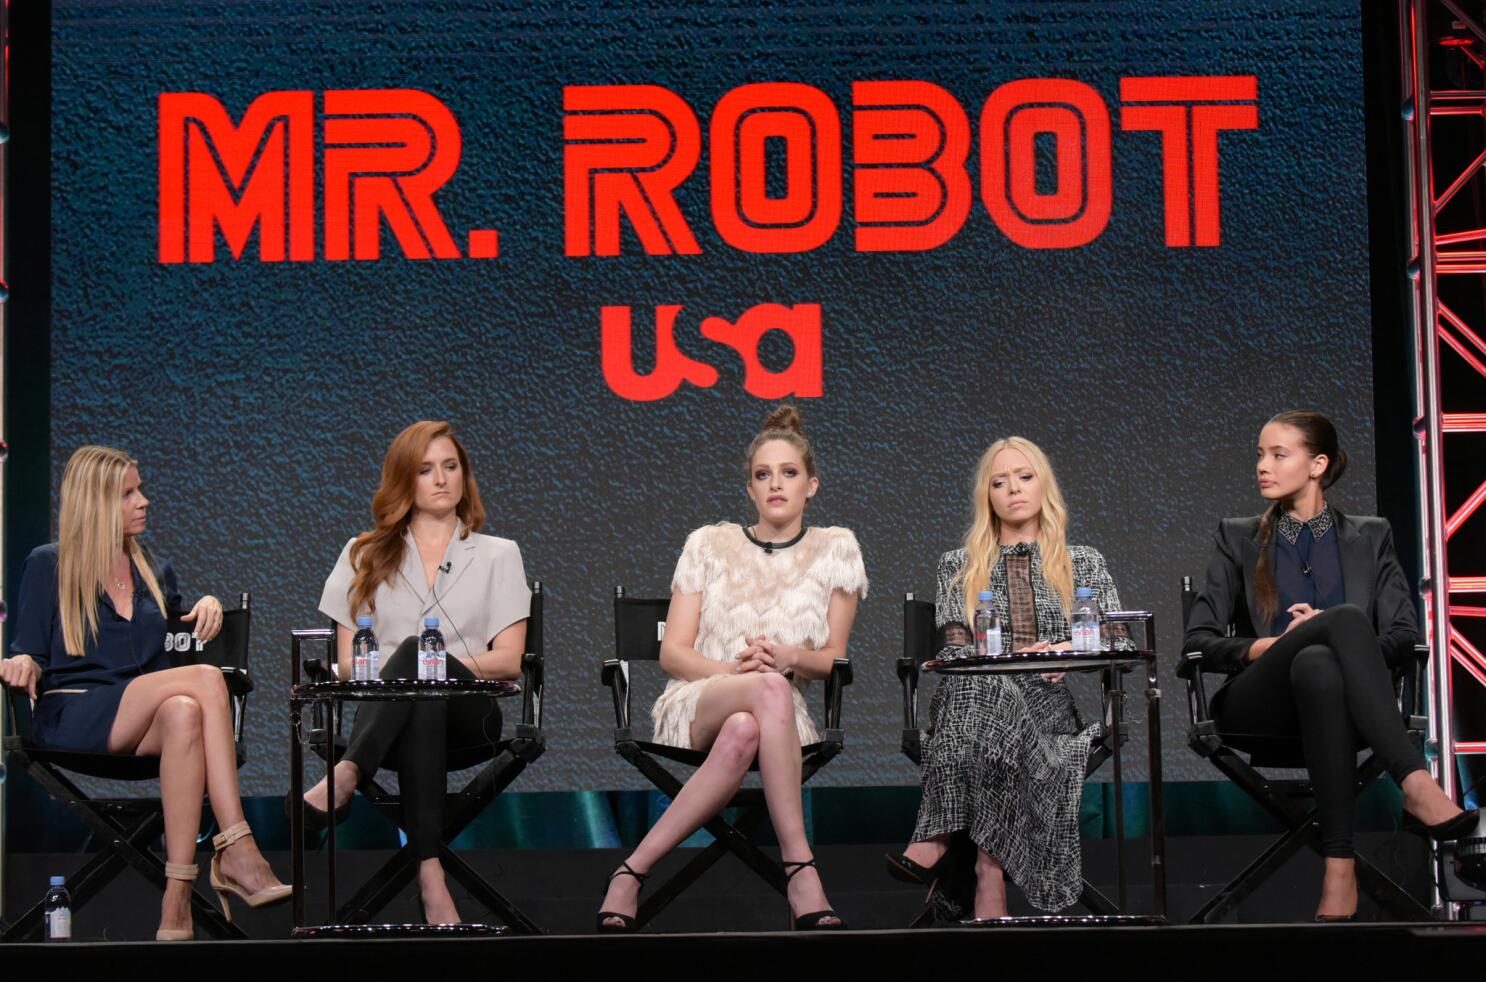 Mr Robot's Female Characters Aren't Sidekicks